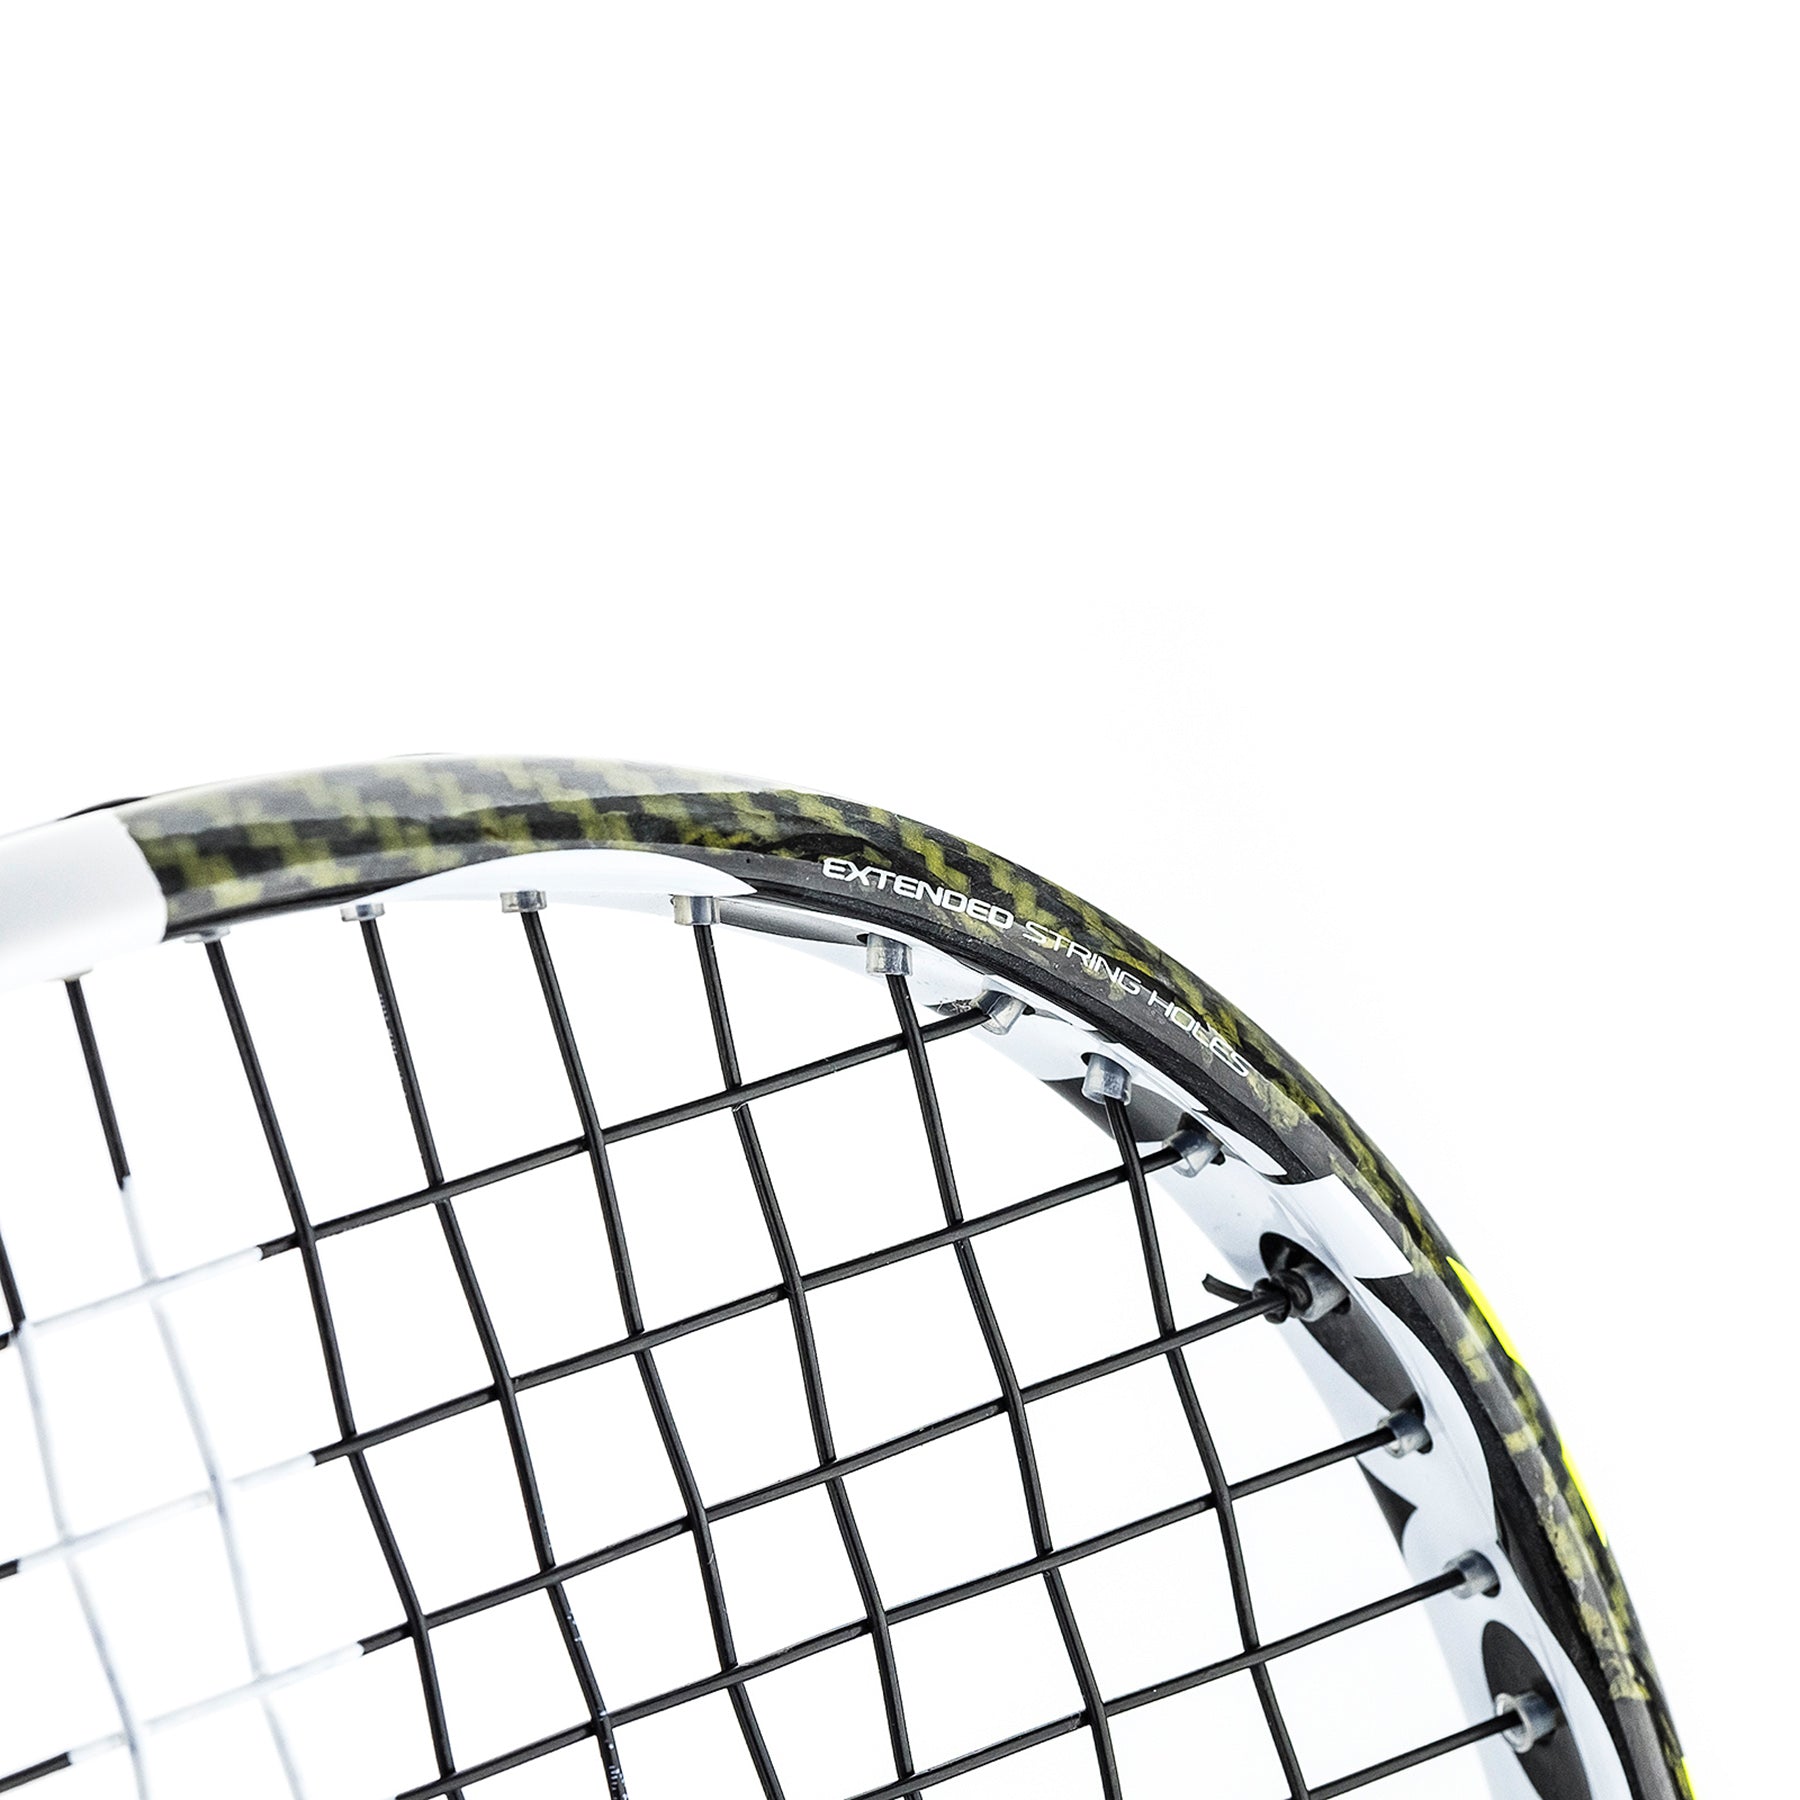 Tecnifibre Carboflex 130 X-Top (Marwan El Shorbagy) Squash rackets Tecnifibre